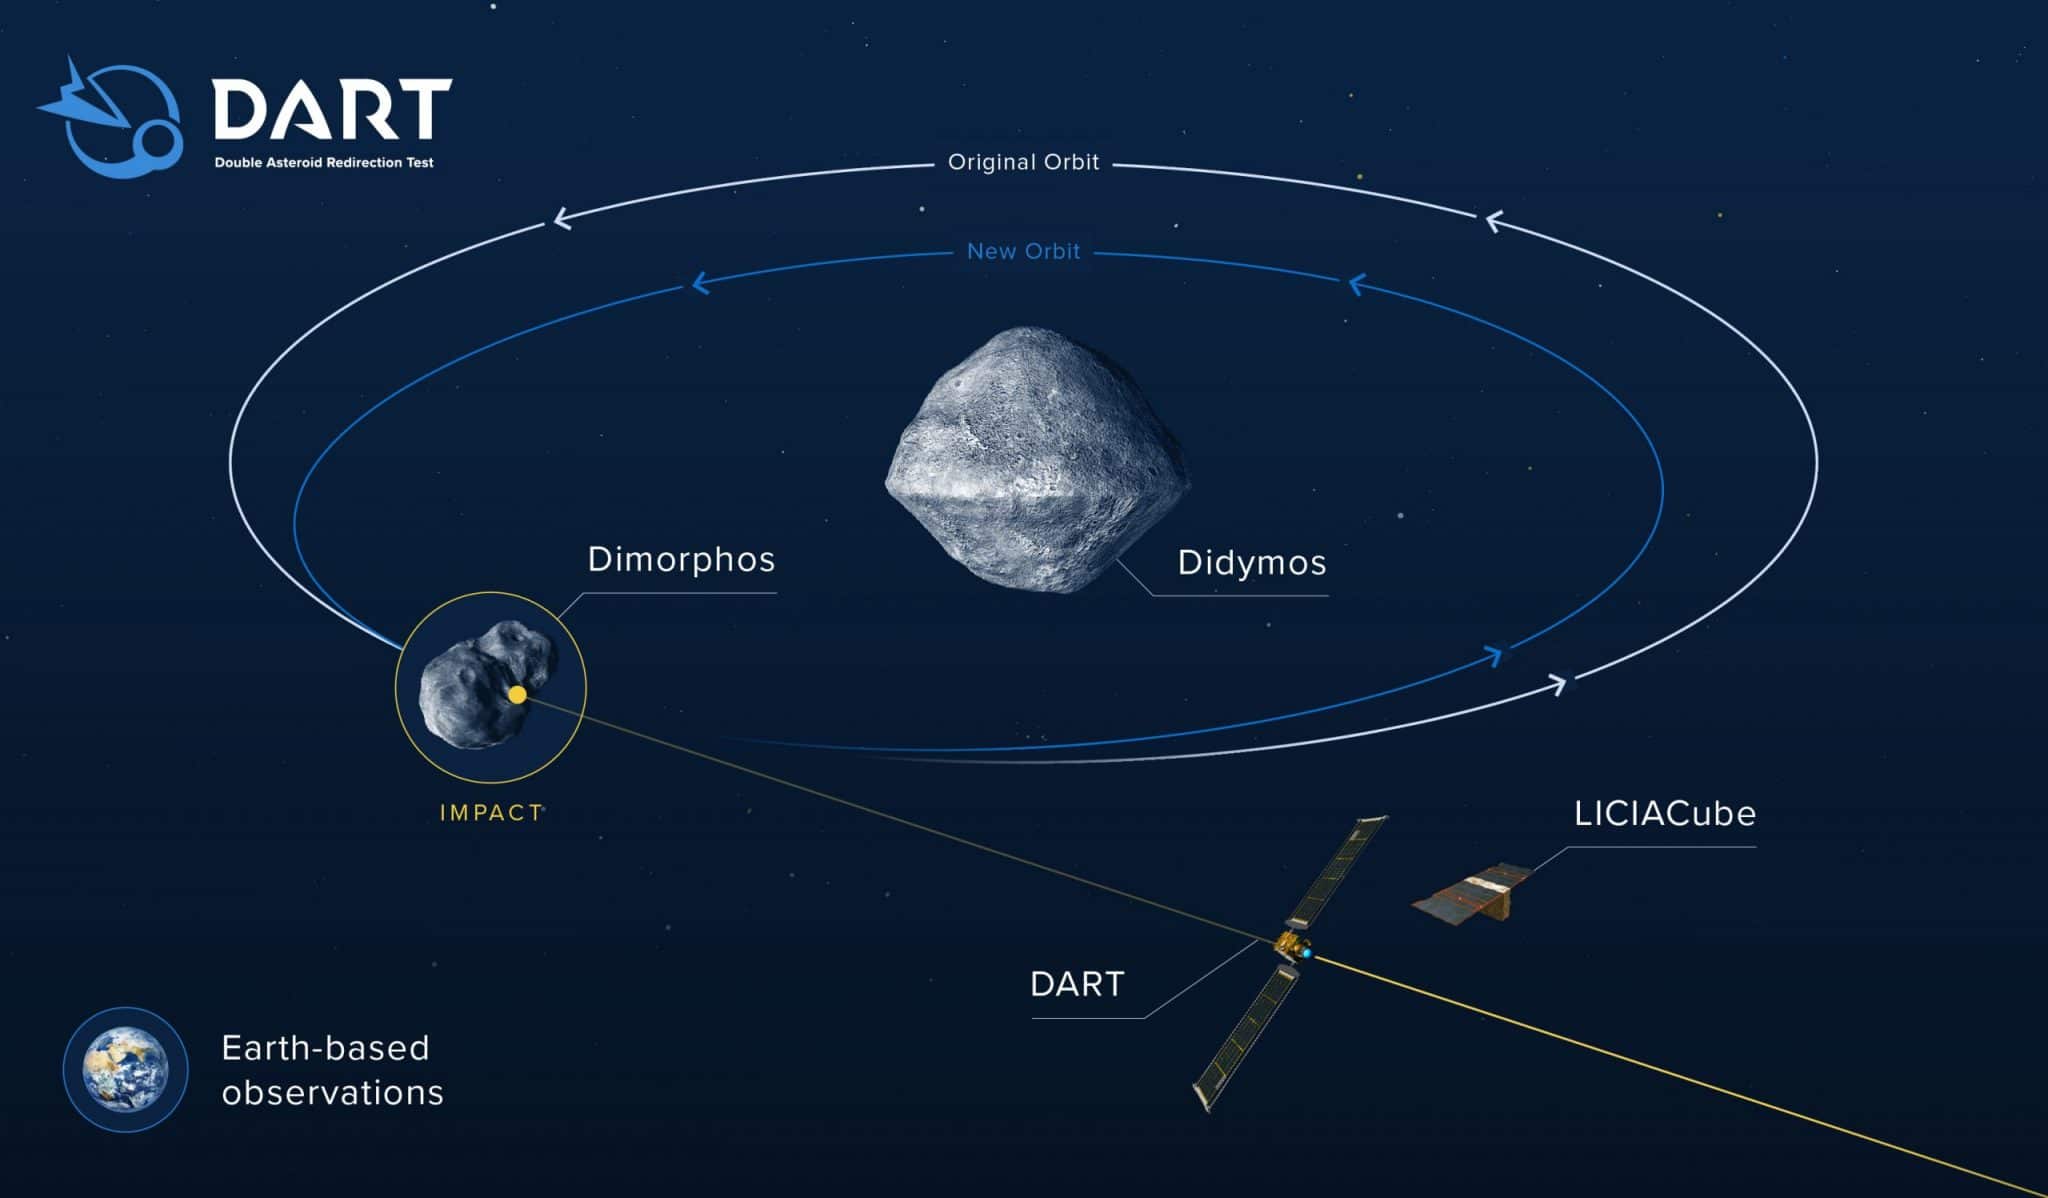 Principe de la mission DART. La sonde entre en collision avec la lune Dimorphos de l’astéroïde Didymos en 2022 alors que le mini-satellite italien LICIACube observe le tout. Sous l’effet de l’impact, l’orbite d’origine (en blanc) de la petite lune est modifiée (en bleu), ce qui prouvera qu’une telle collision volontaire peut altérer la trajectoire d’un objet céleste. Crédit : NASA/Johns Hopkins APL